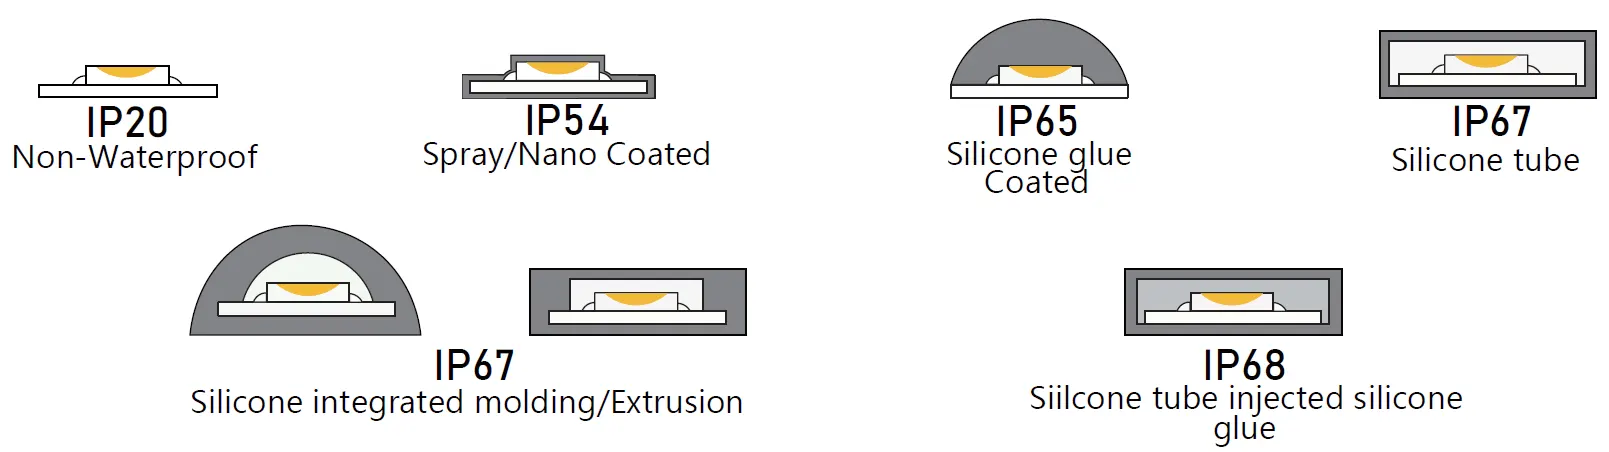 Opzioni di classificazione IP della striscia flessibile a LED